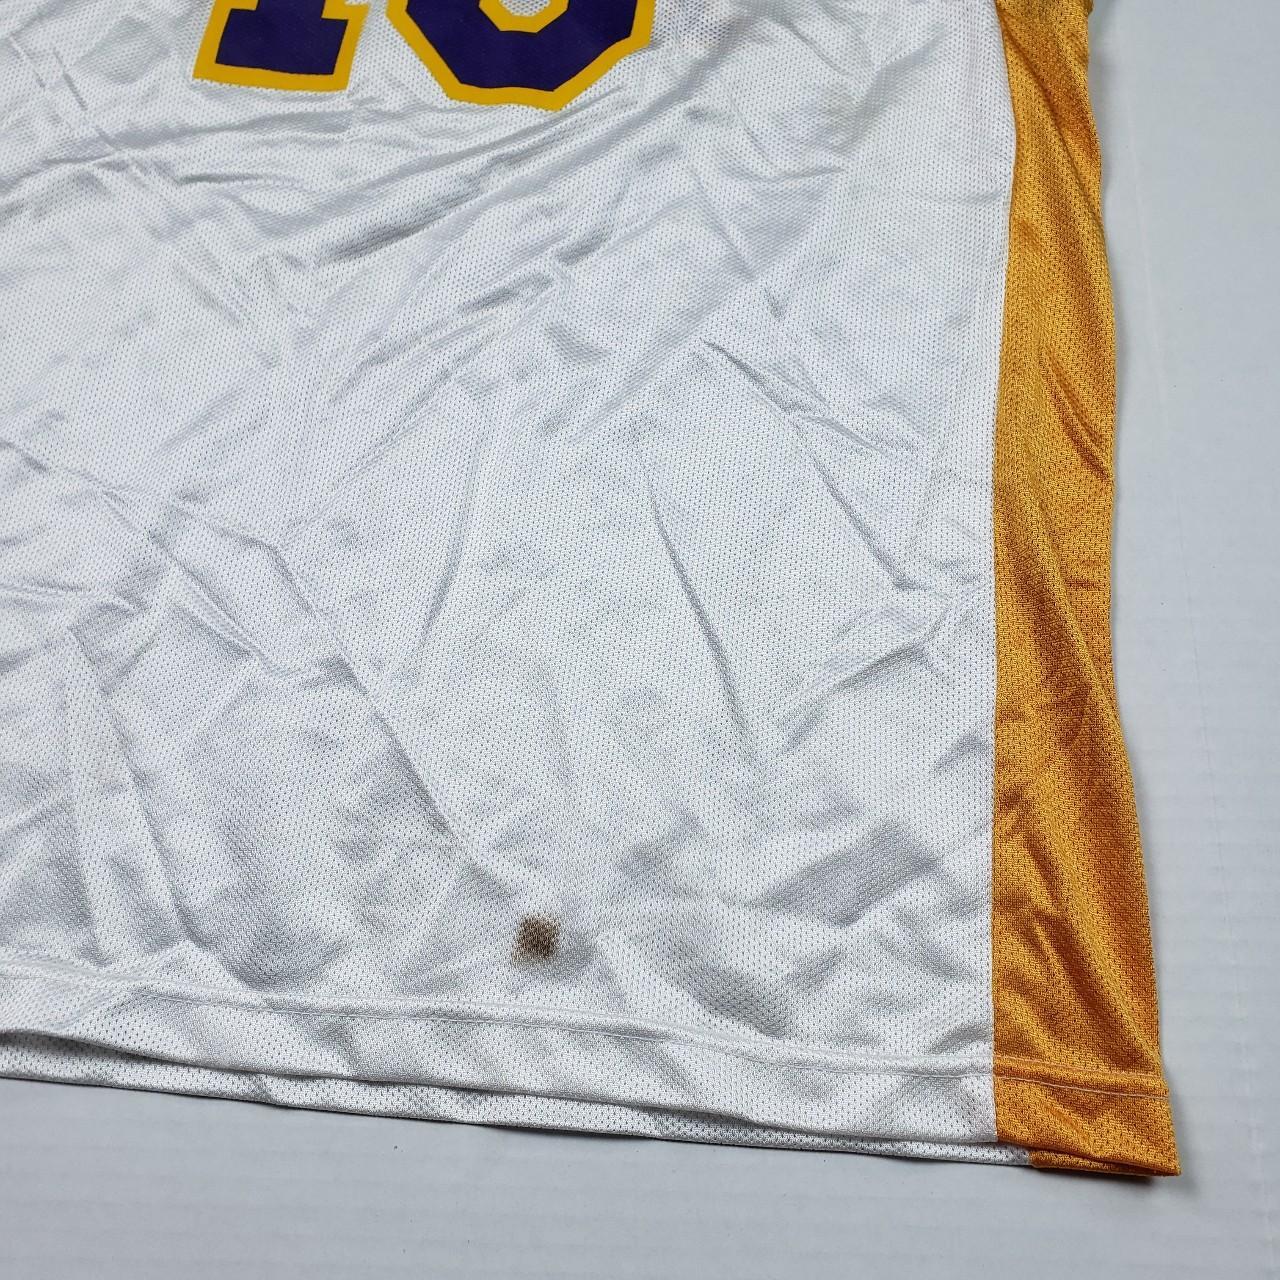 Adidas Lakers Jersey Pau Gasol Size: - Depop